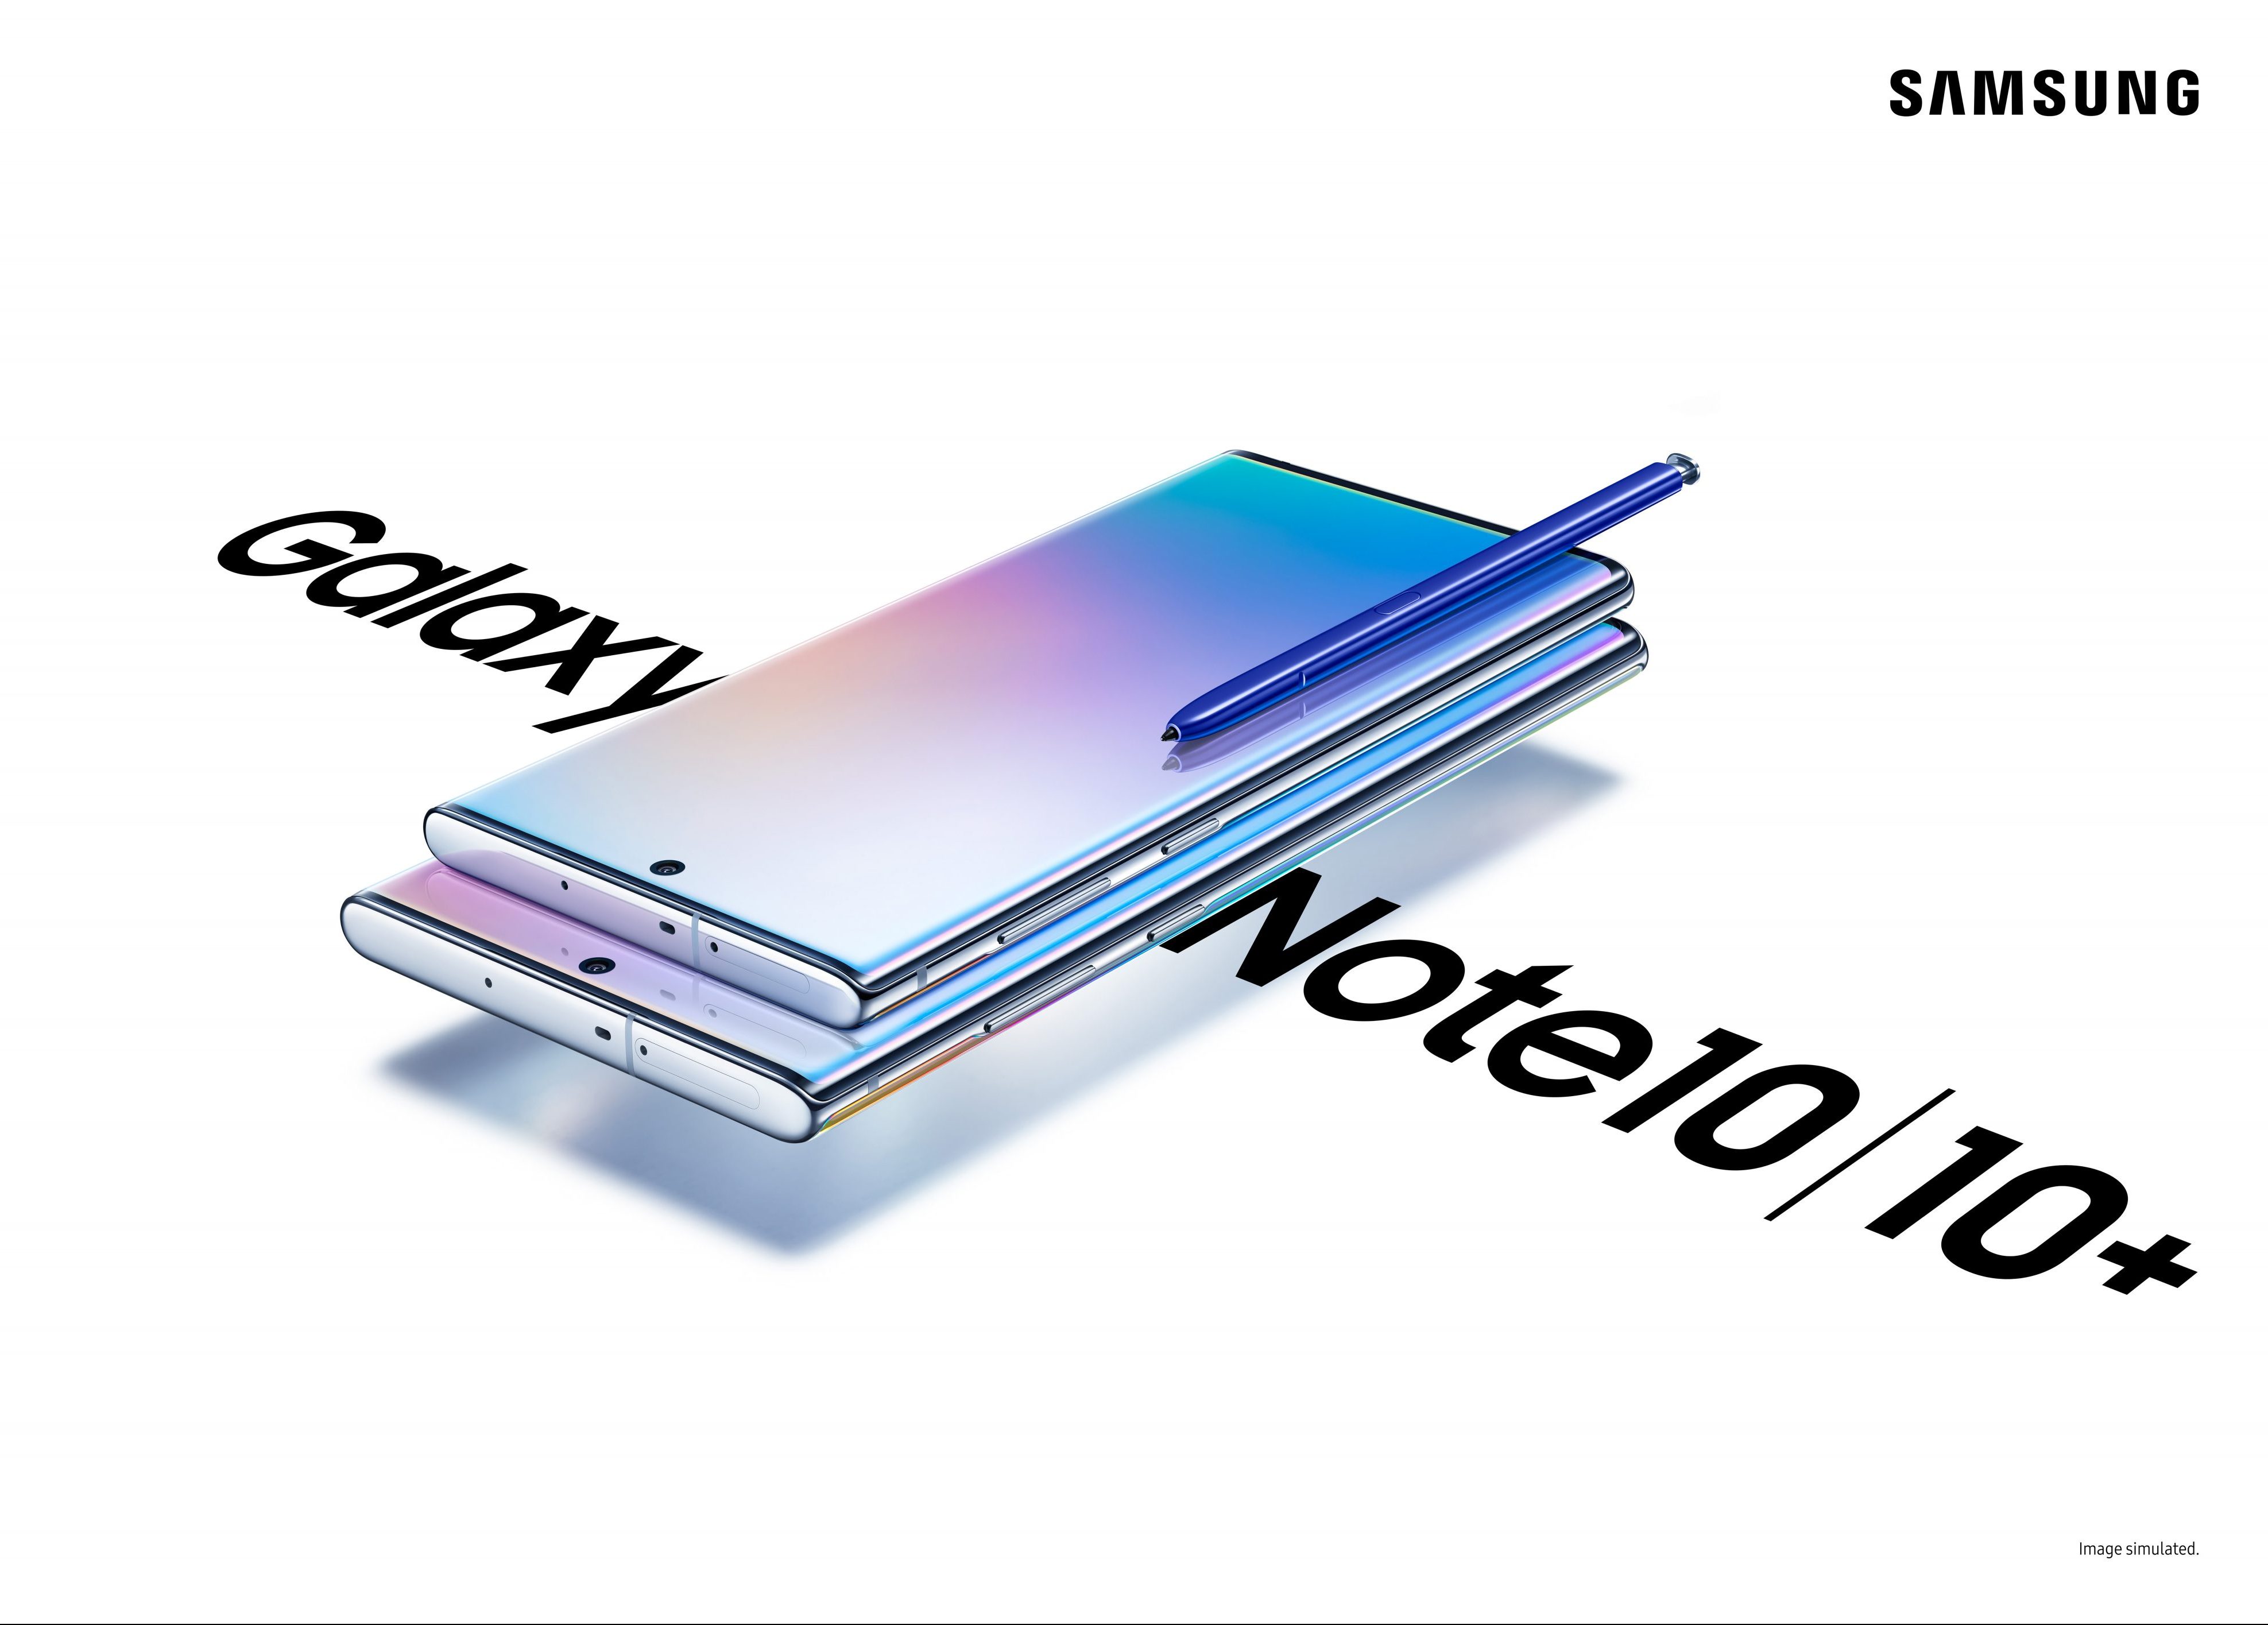 Samsung-Galaxy-Note10-2-e1566501090832.jpg